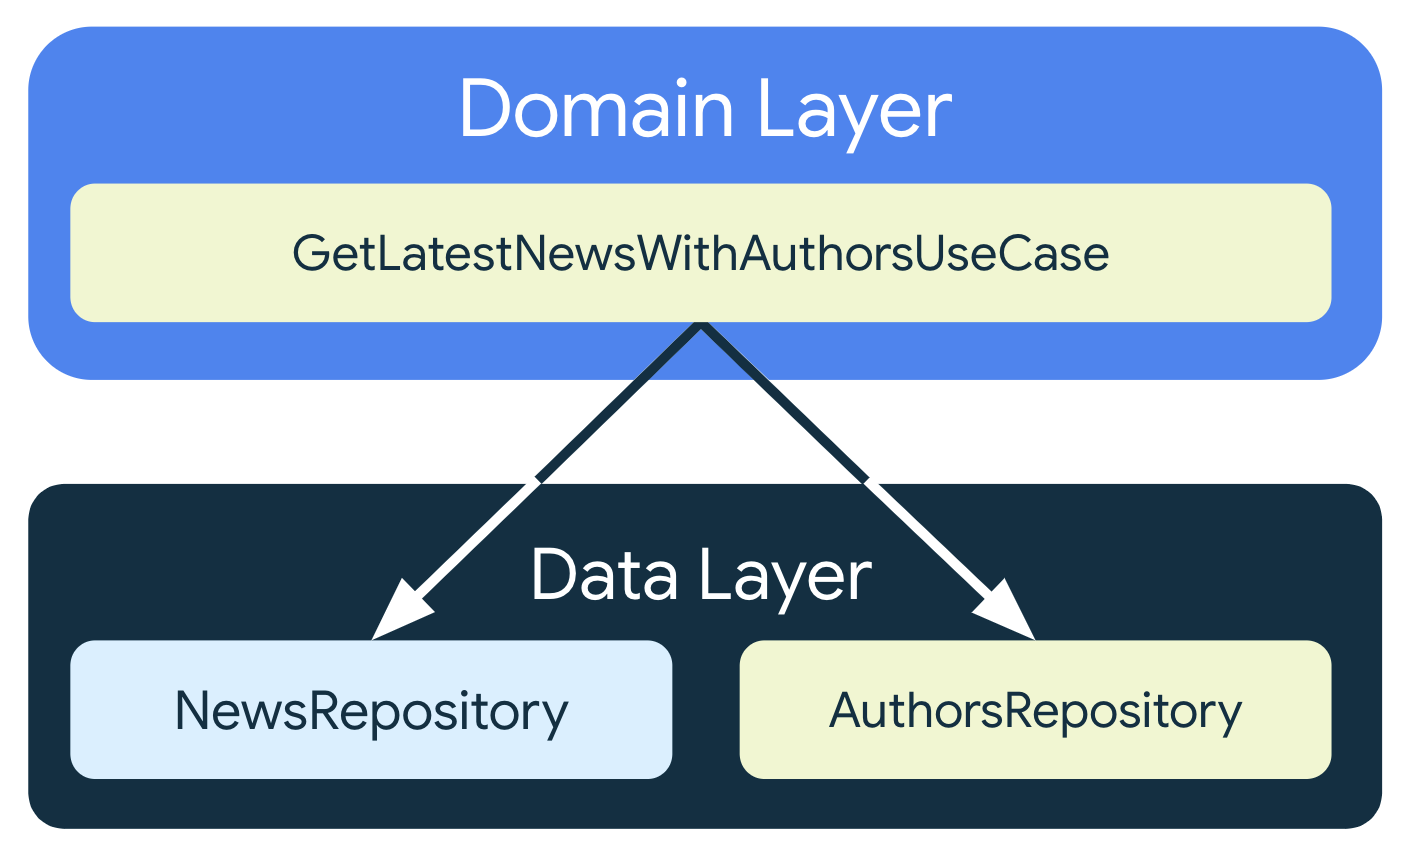 GetLastNewsWithAuthorsUseCase, veri katmanından iki farklı depo sınıfına bağlıdır: NewsRepository ve AuthorsRepository.